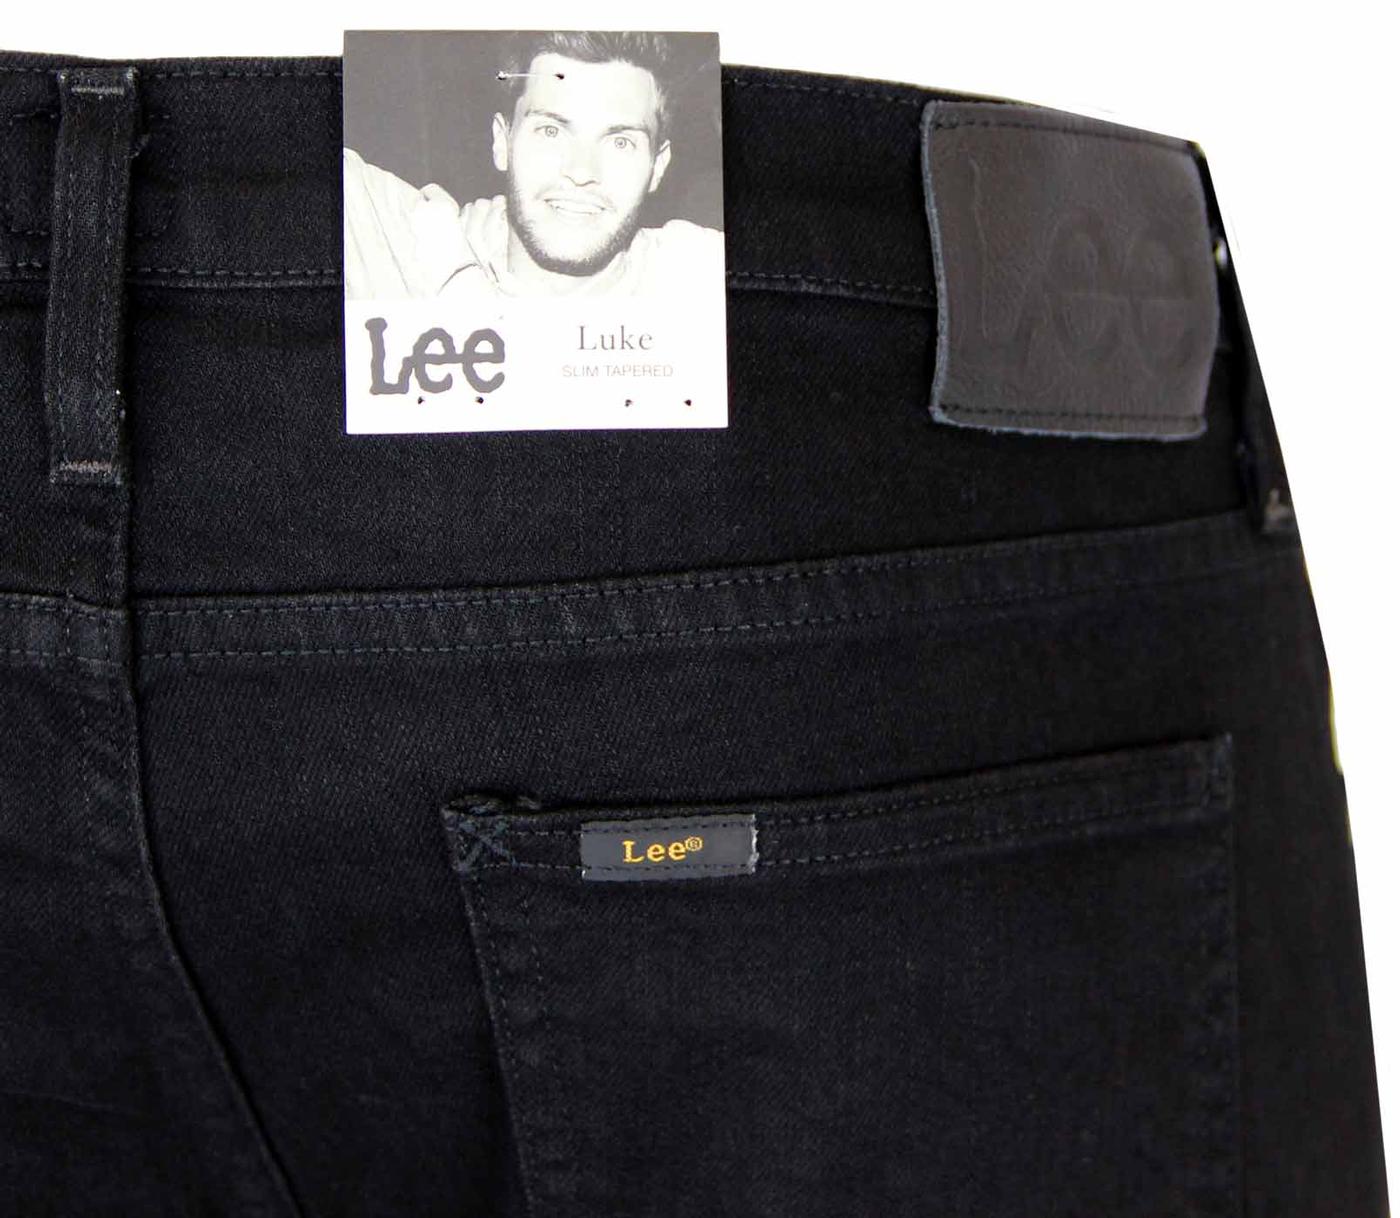 LEE JEANS Luke Retro Indie Mod Slim Tapered Fit Jeans Clean Black